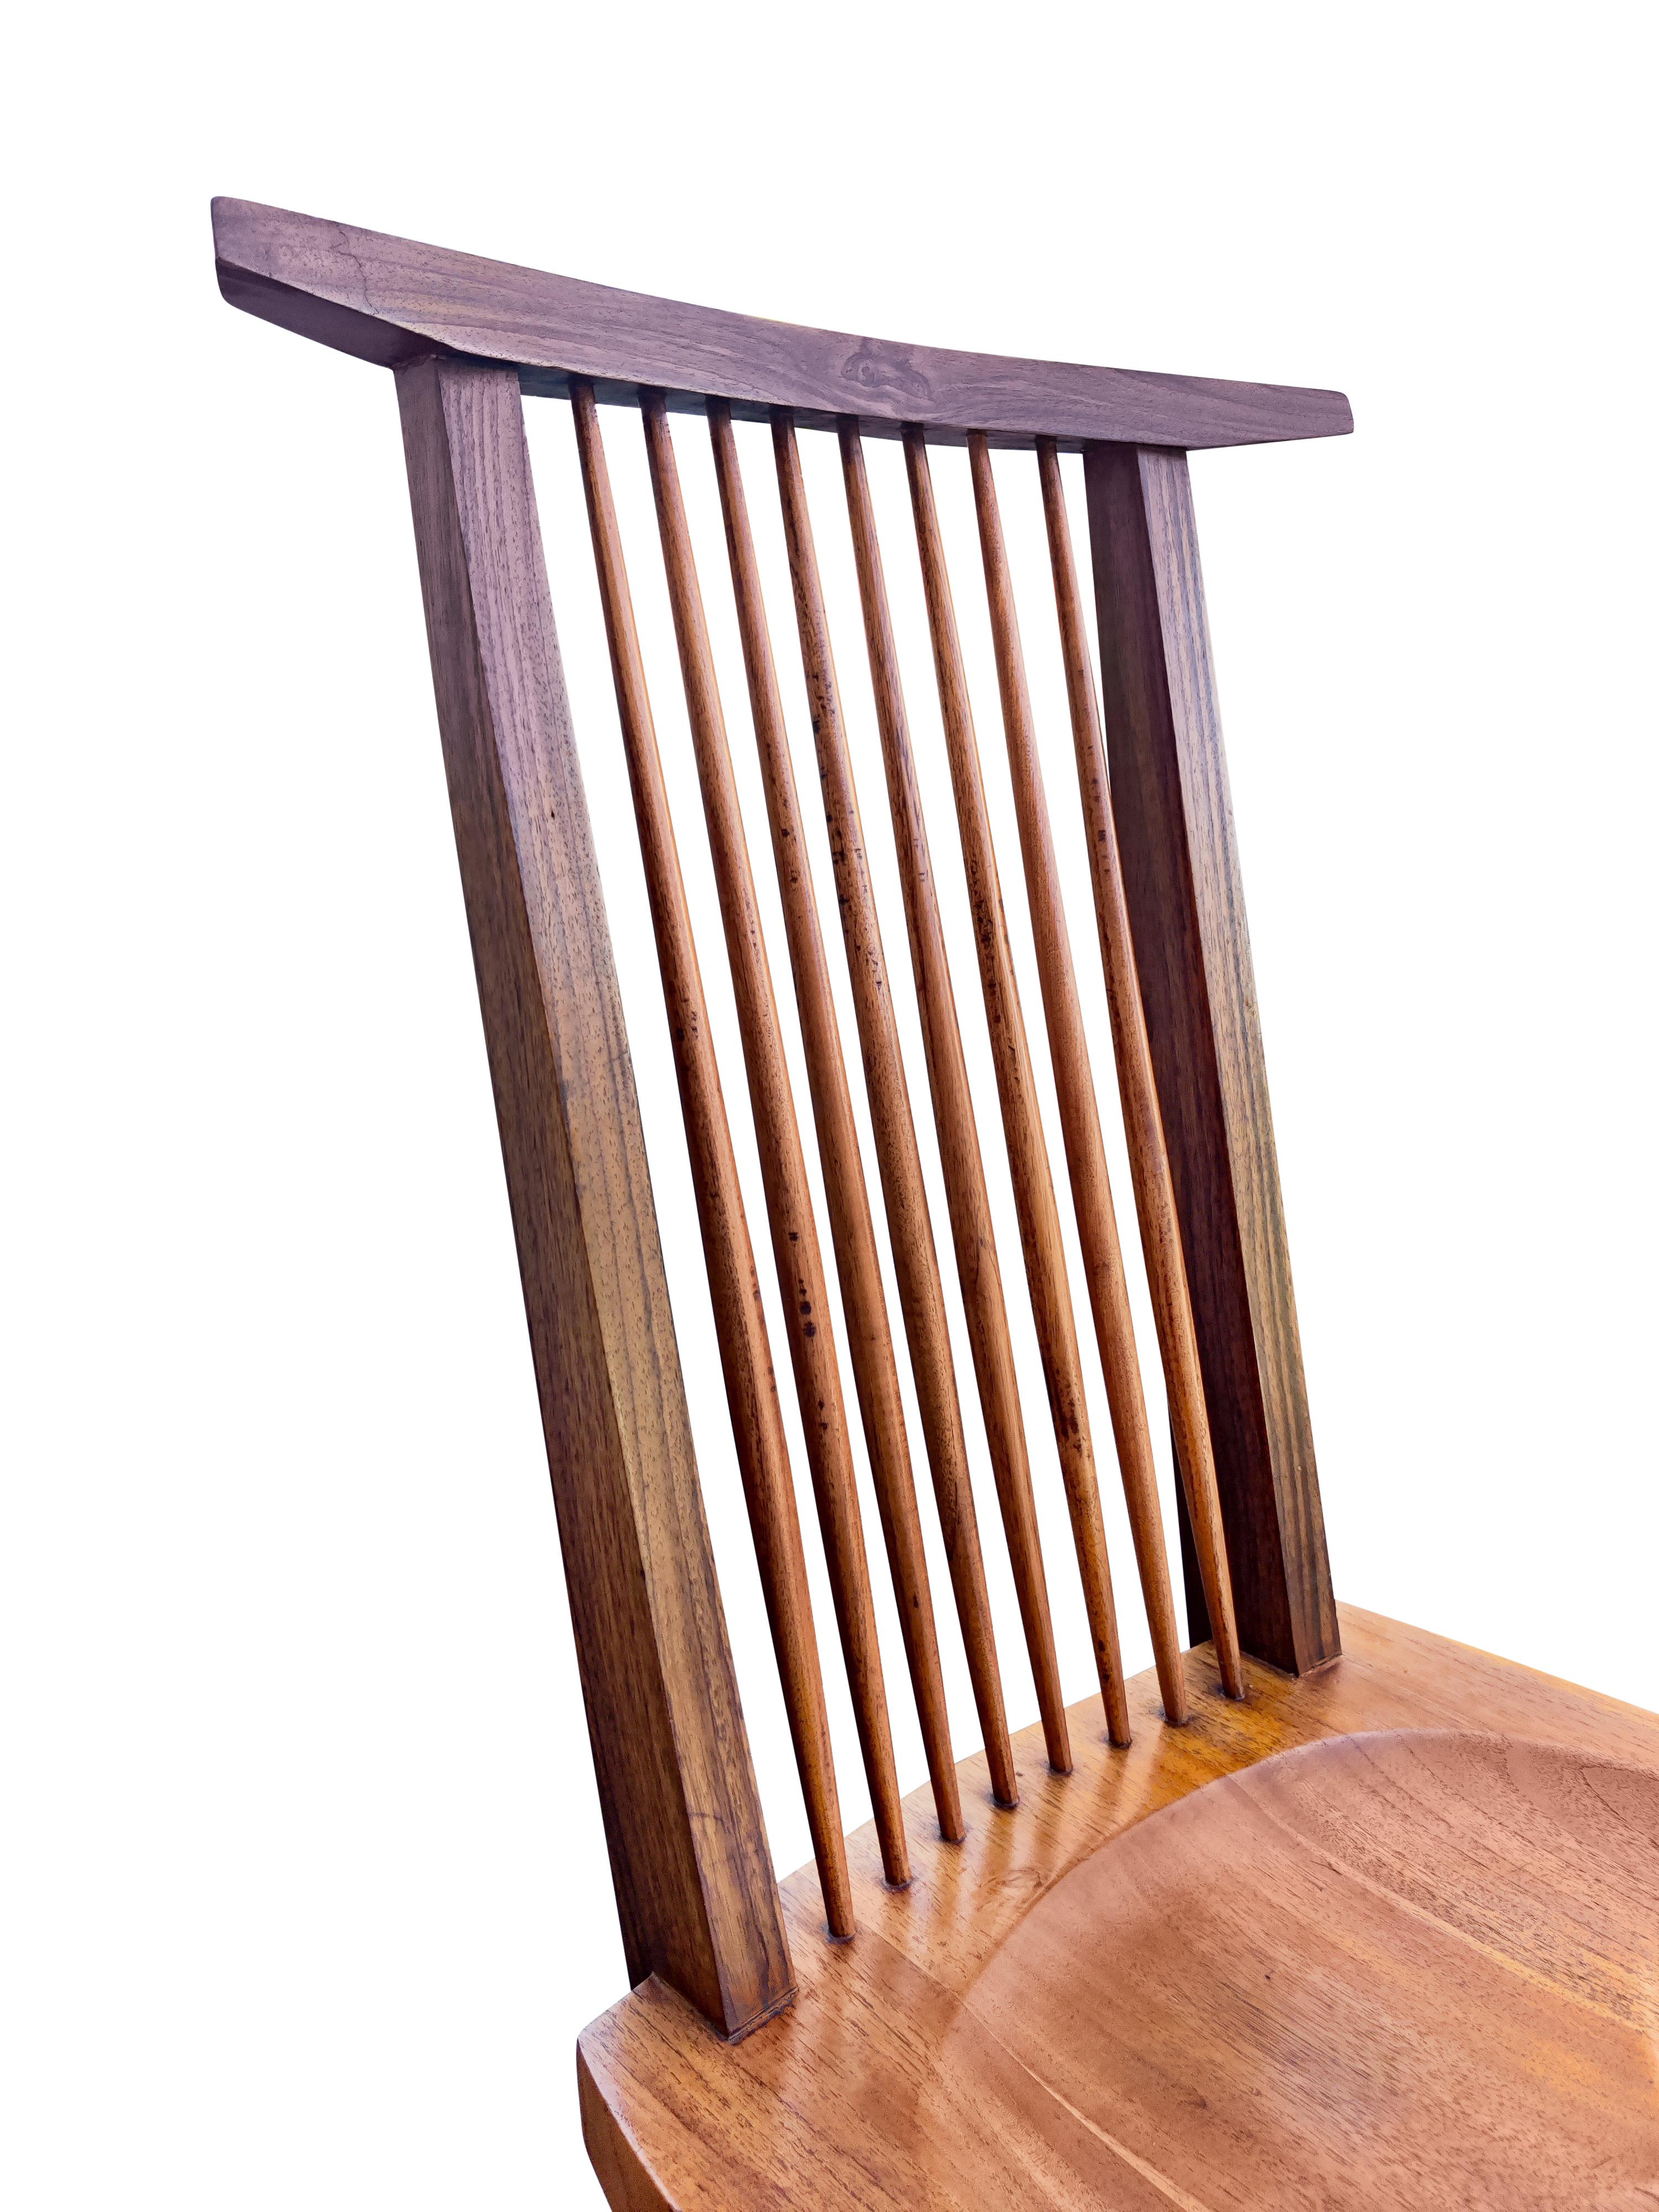 George Nakashima Inspired Set of Six Conoid Style Dining Chairs Mixed Hardwoods 1